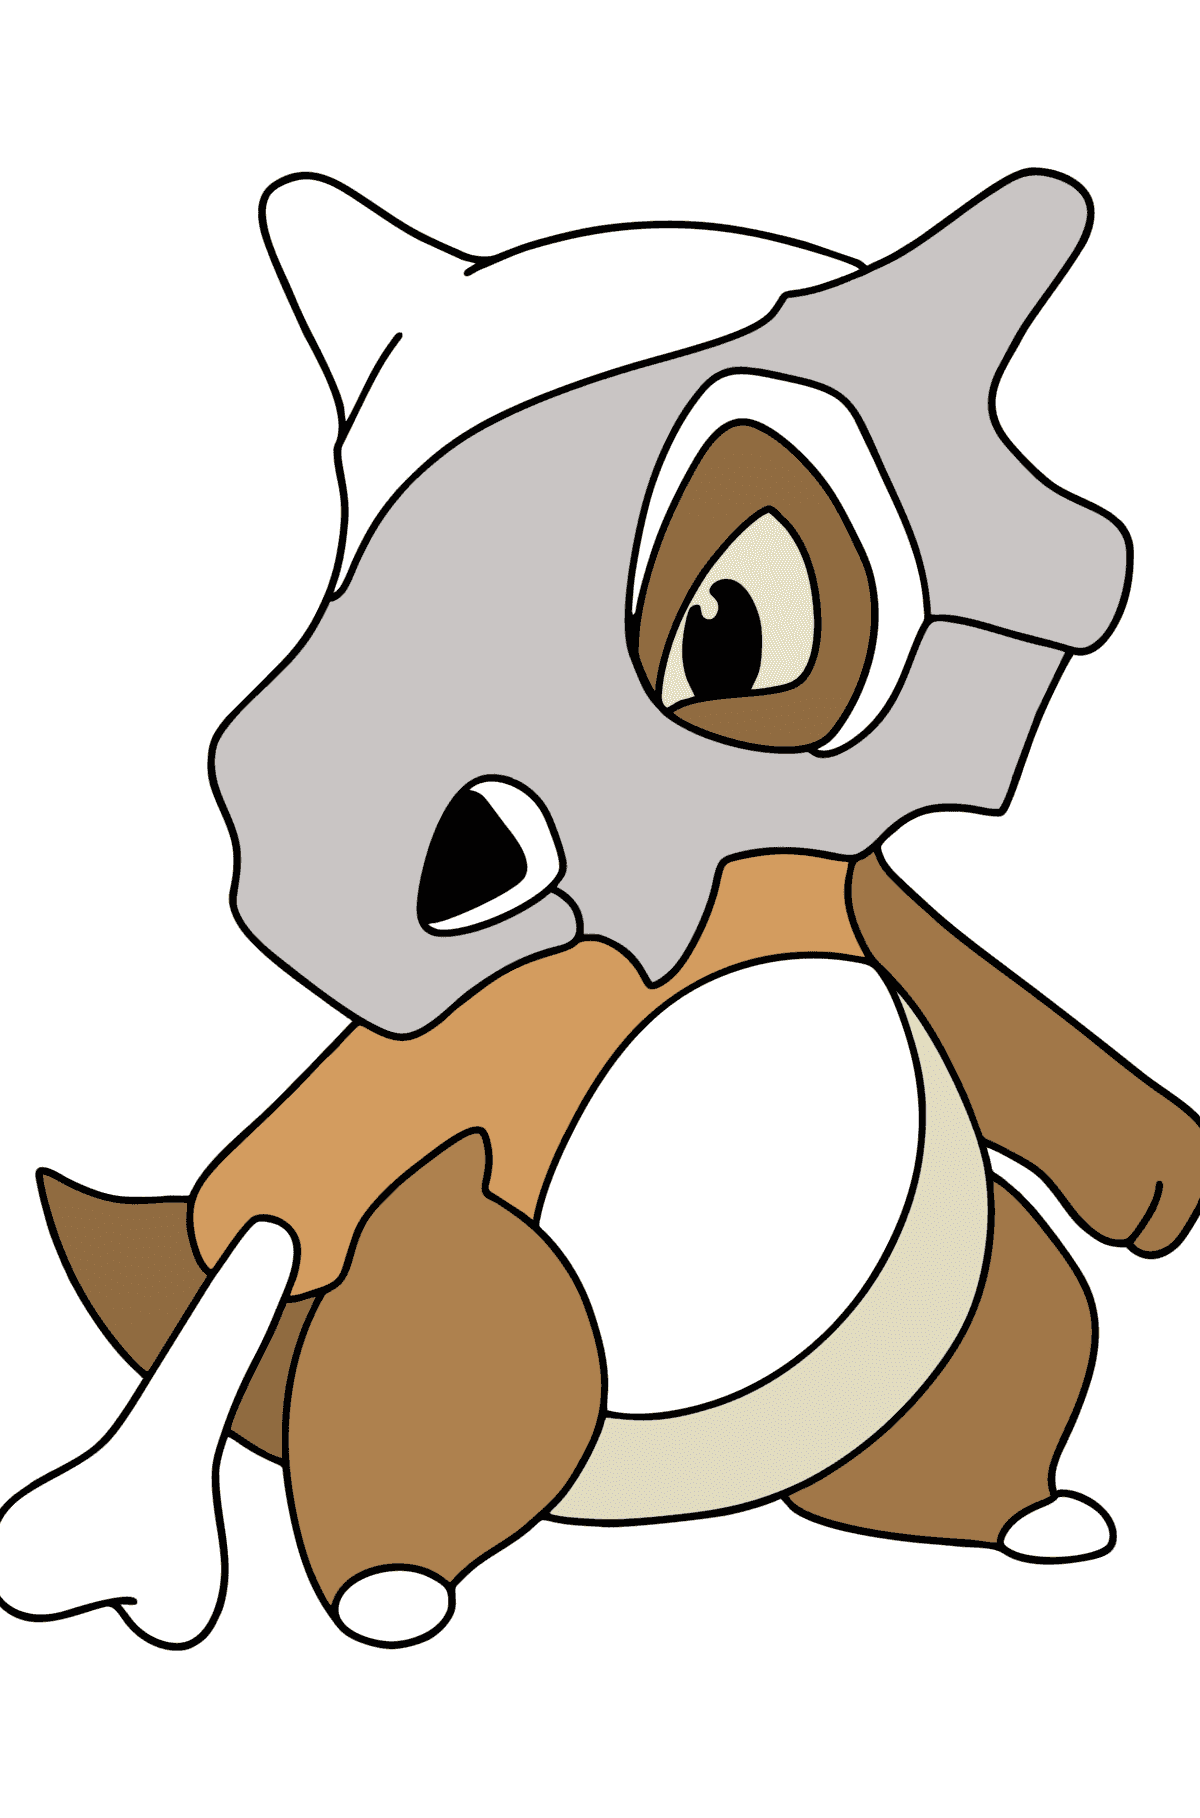 Målarbild Pokémon Go Cubone - Målarbilder För barn